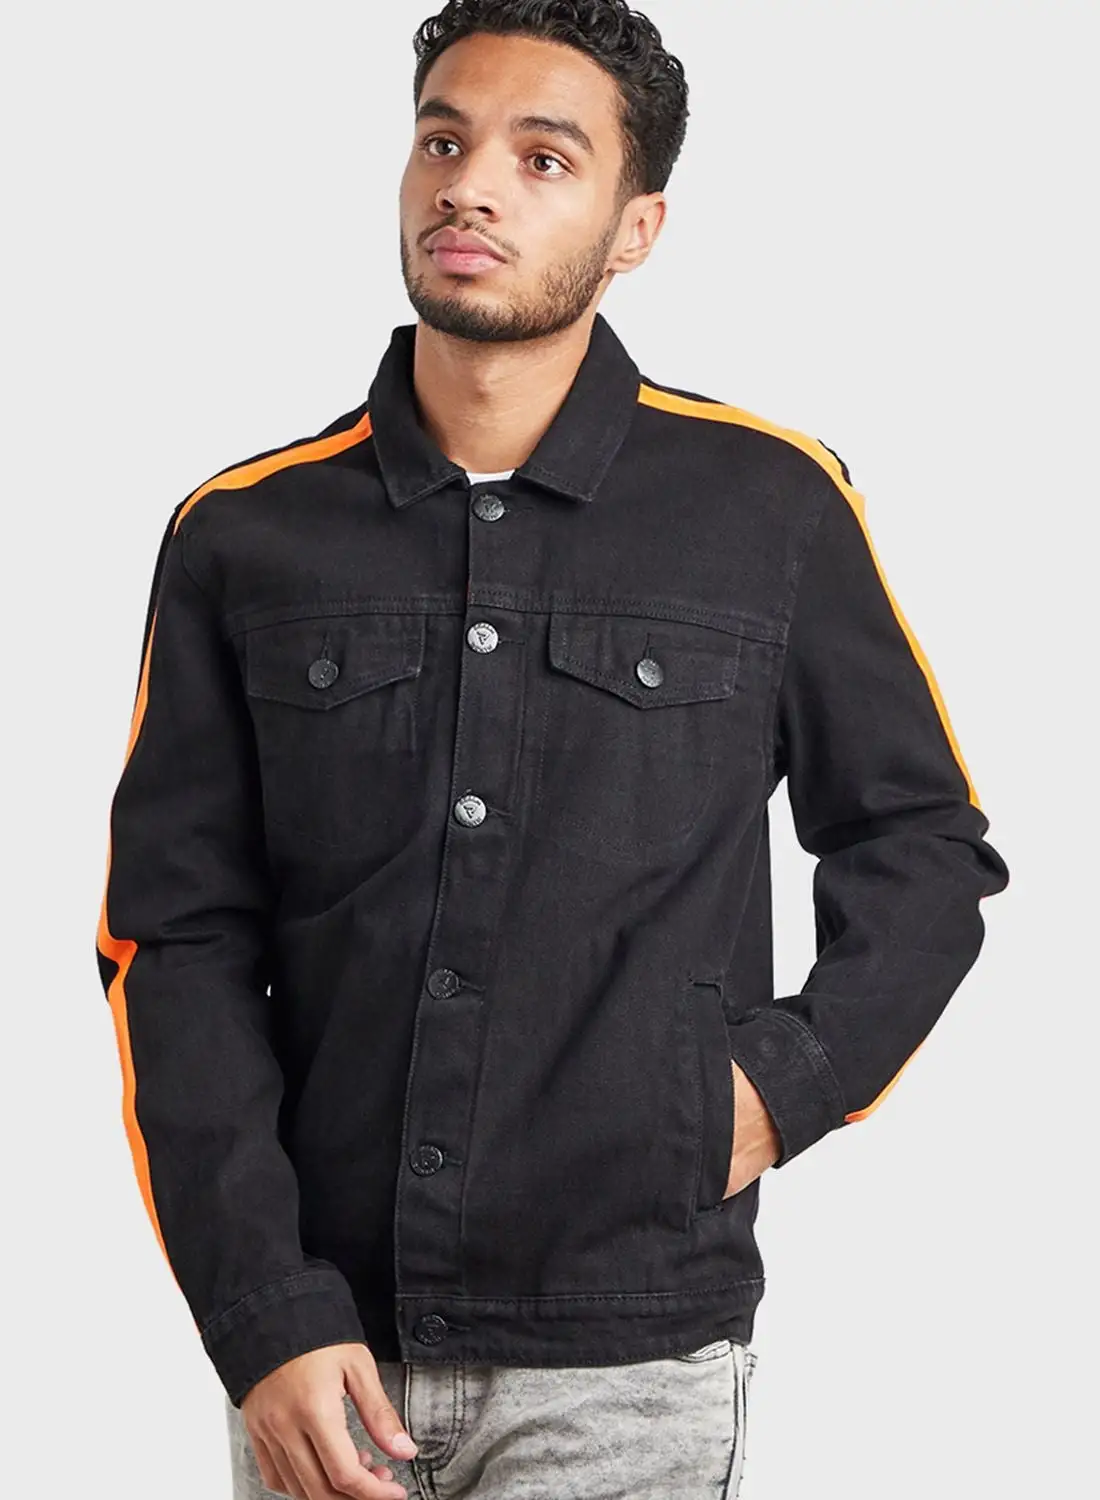 Styli Denim Jacket With Contrast Striped Detail